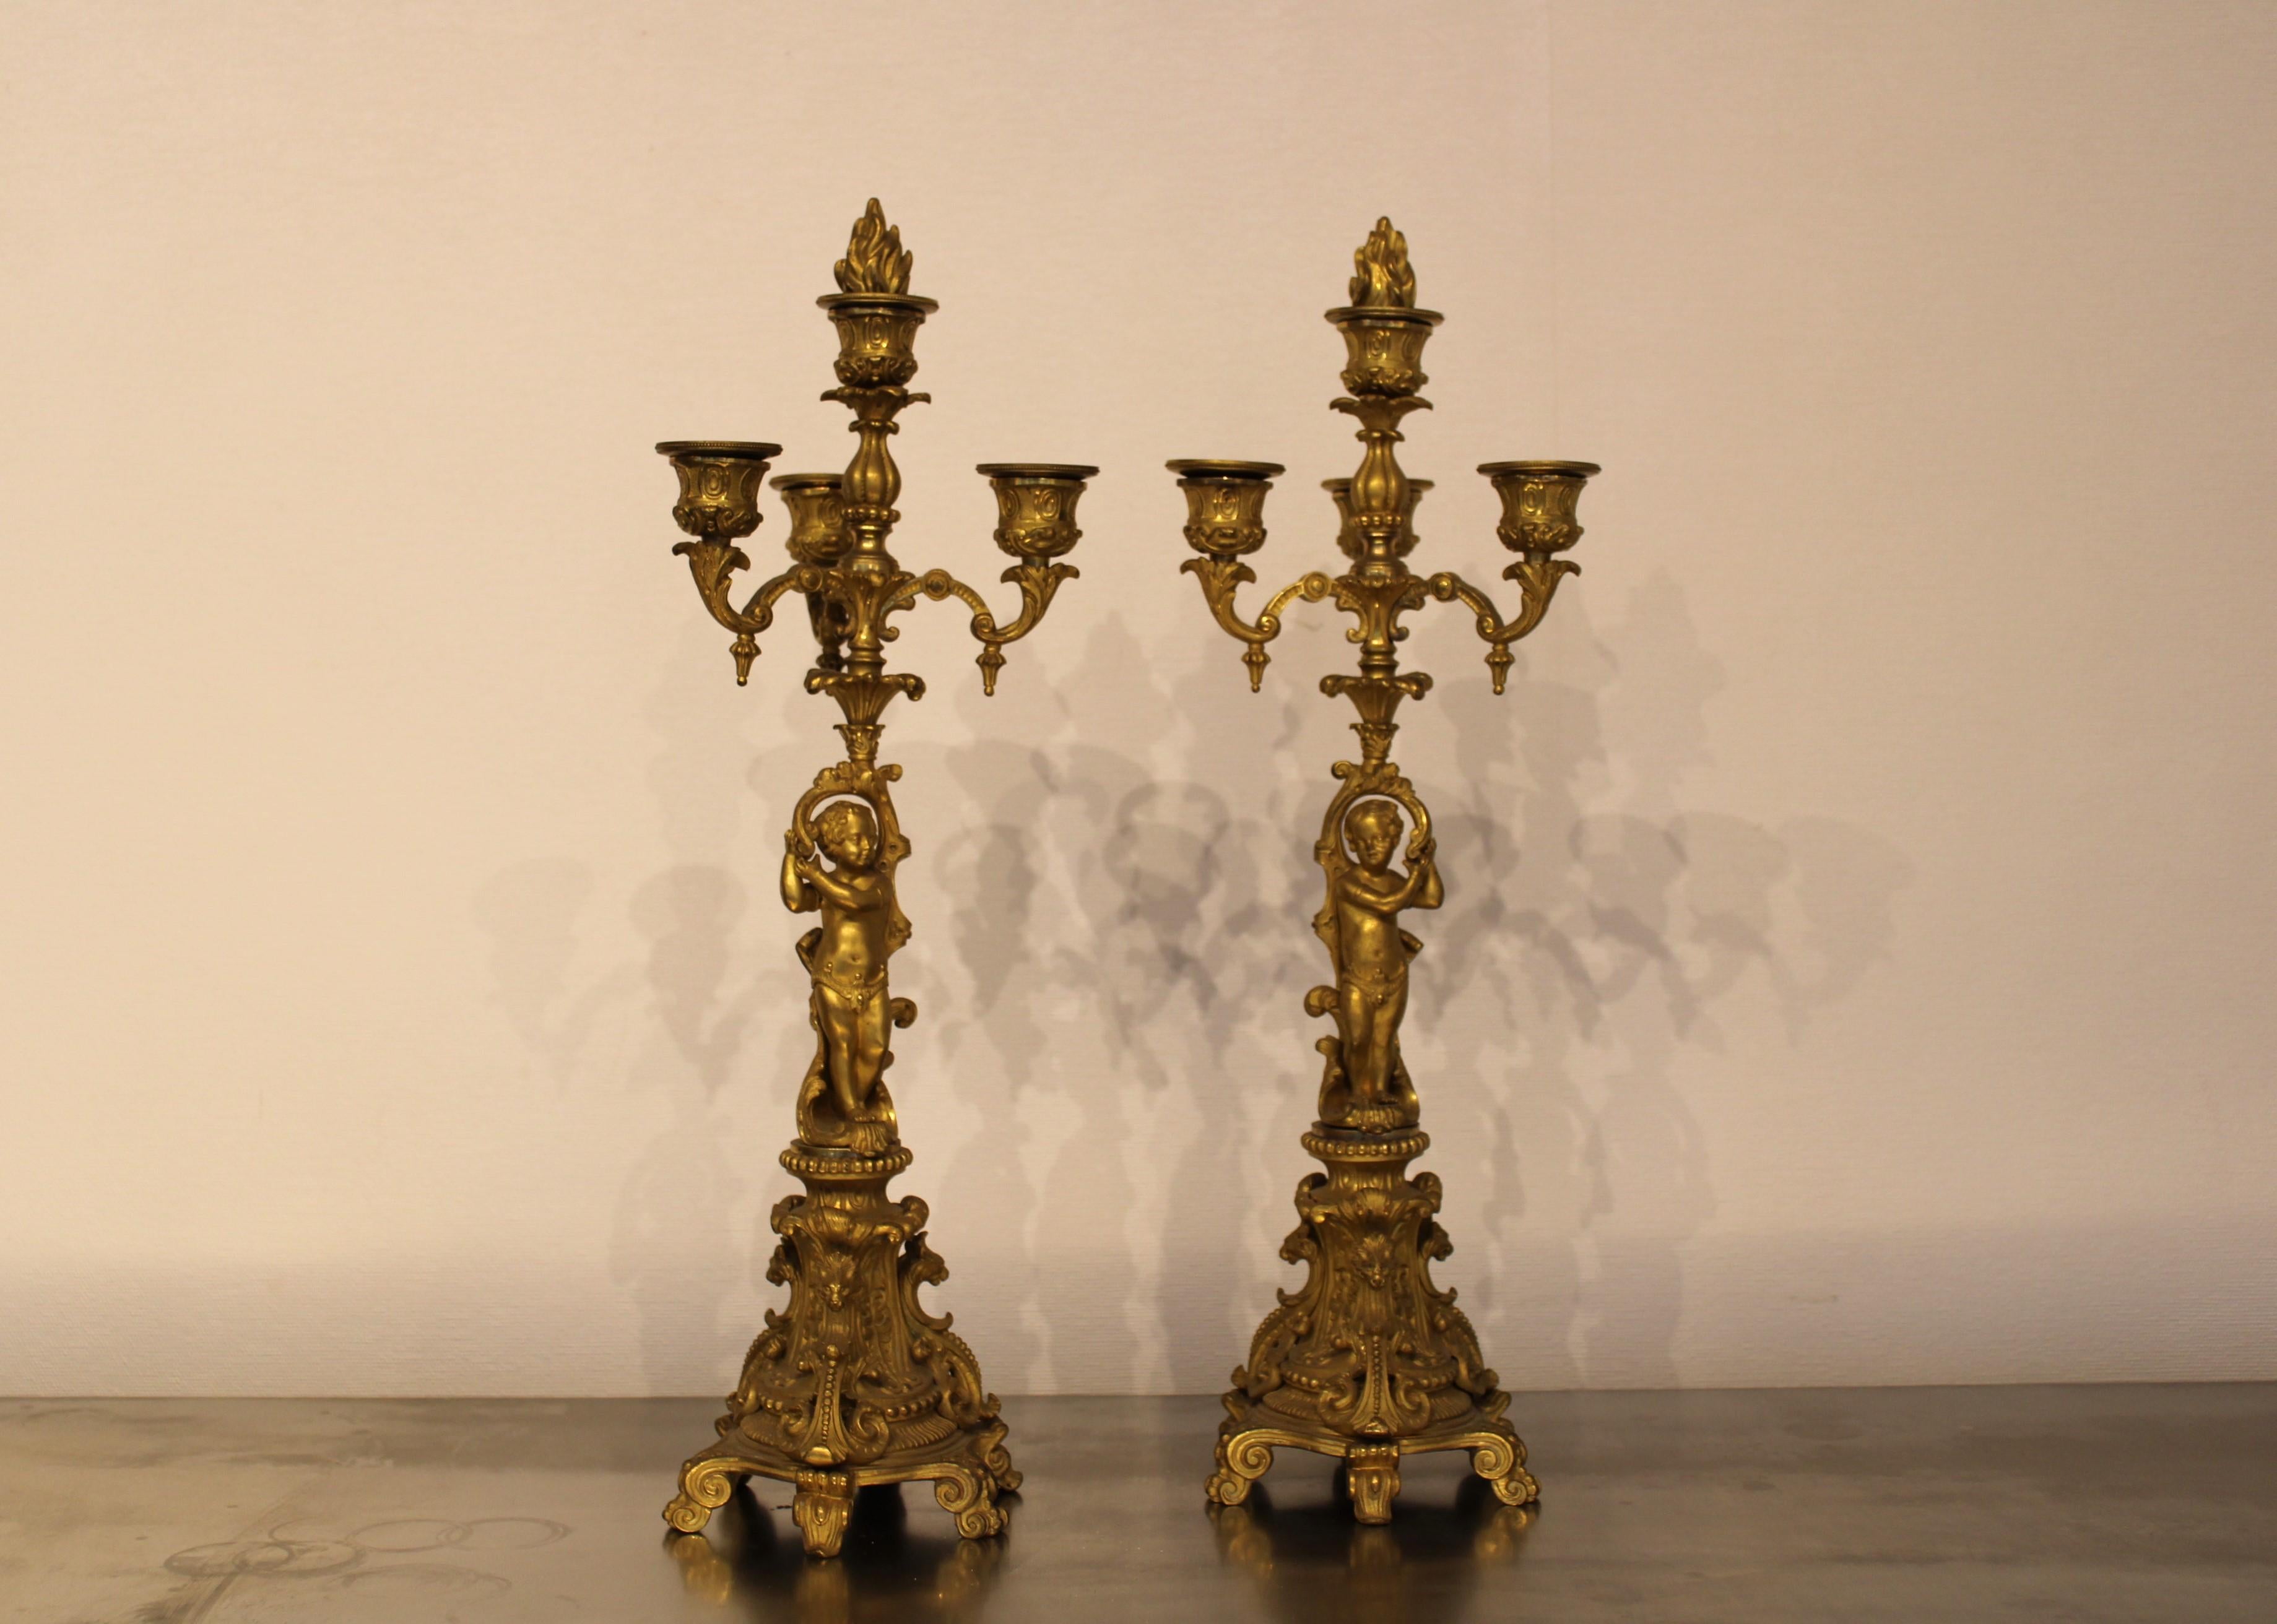 Paar Kandelaber aus ziselierter und vergoldeter Bronze,
Frankreich, Ende des 19. Jahrhunderts